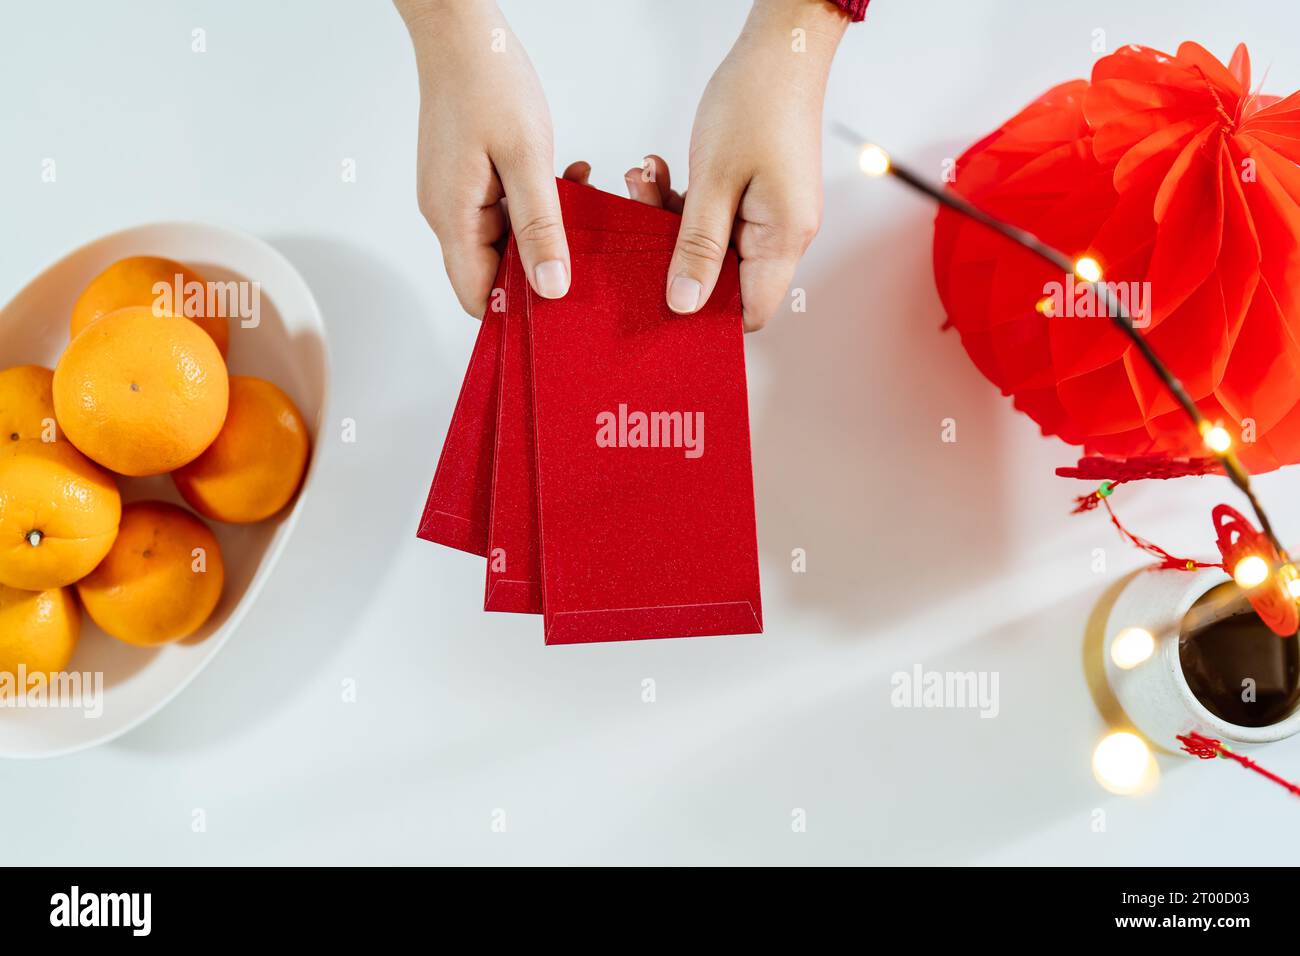 Asiatische Frau gibt roten Umschlag für das Neujahrsfest. Handgriff, rotes Paket Stockfoto